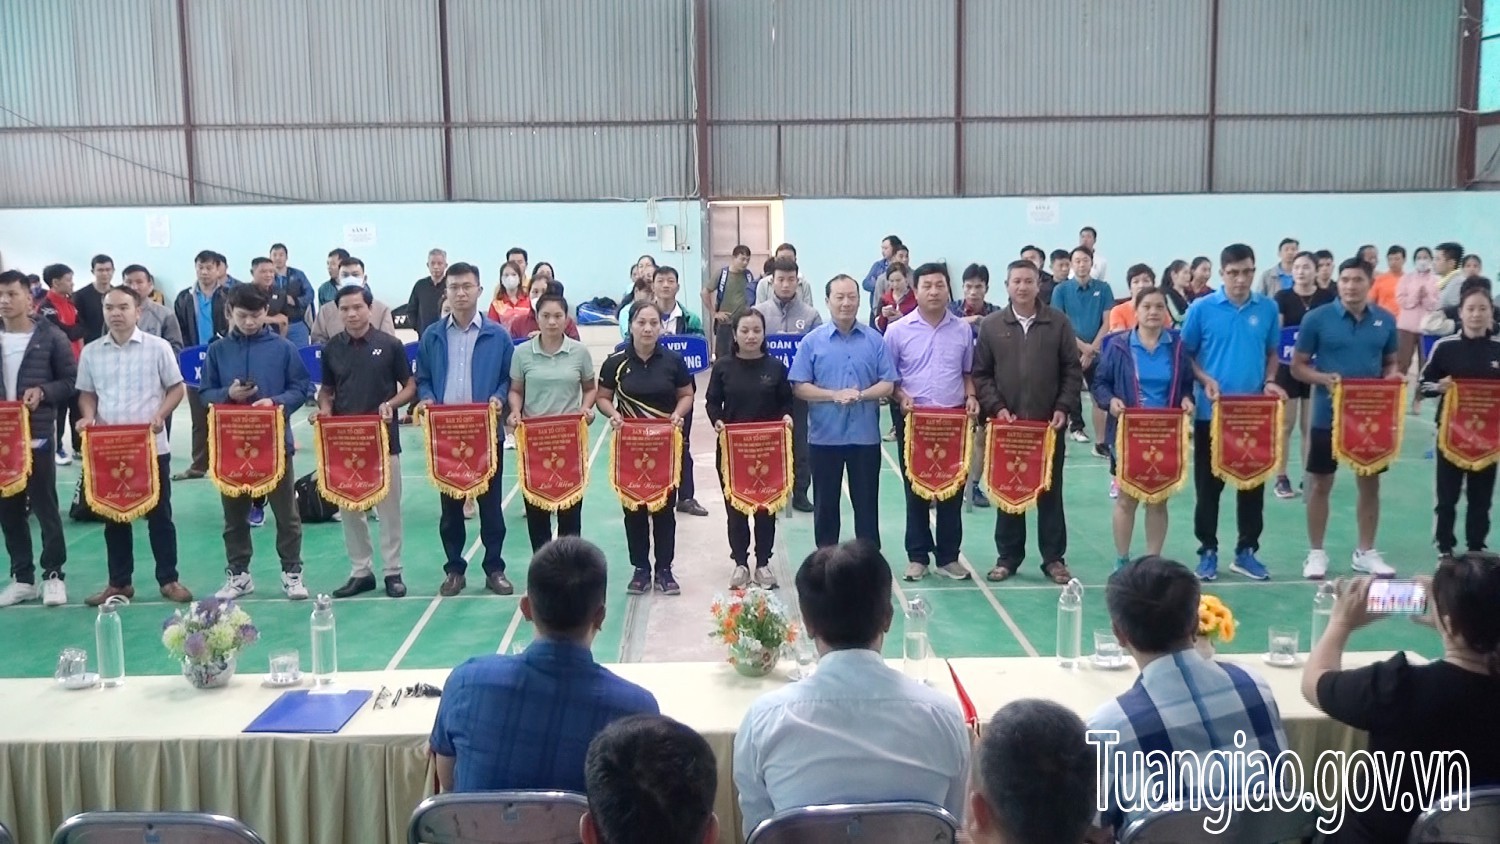 Khai mạc giải cầu lông chào mừng kỷ niệm 70 năm ngày giải phóng huyện Tuần Giáo năm 2022